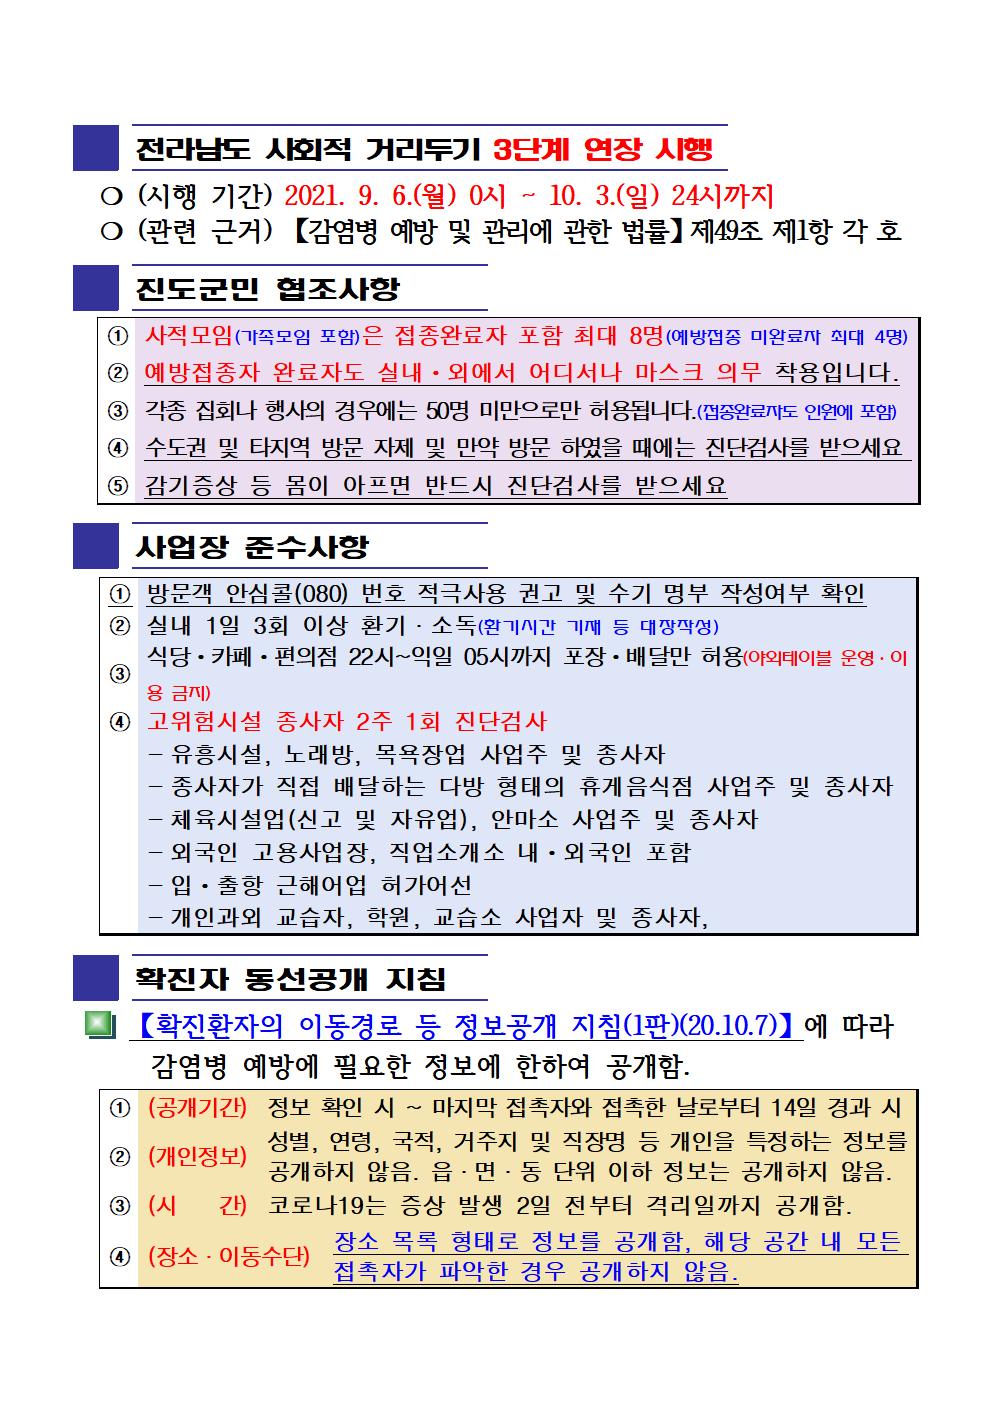 2021년 코로나19 대응 일일상황보고(9월 18일 24시 기준) 첨부#2